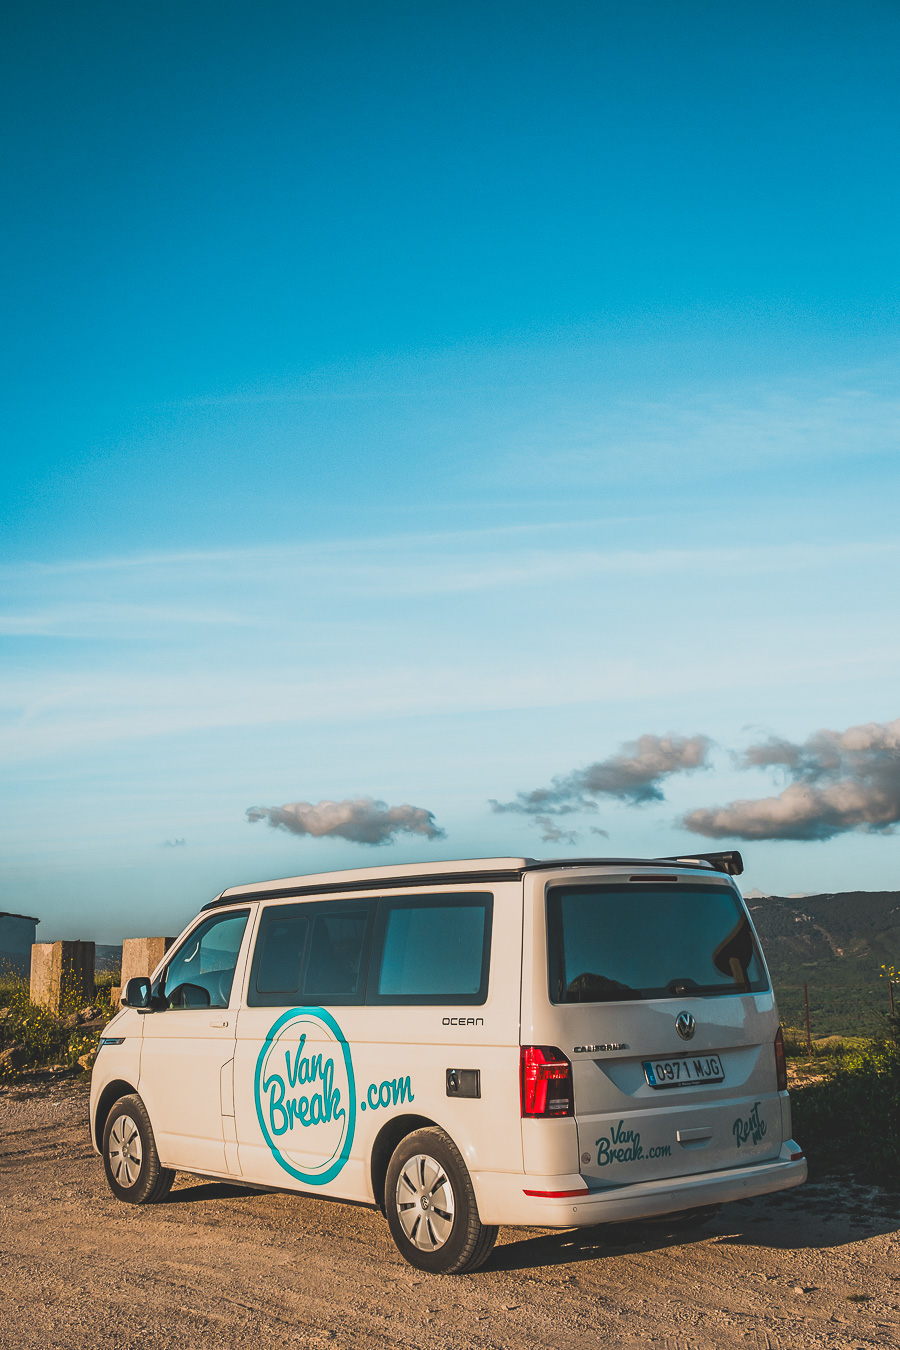 Découvrez nos conseils pour la location d'un van en Andalousie! 🌞 Explorez les paysages époustouflants de l'Andalousie lors d'un road trip inoubliable. Que vous soyez en couple, en famille ou entre amis, profitez de nos astuces pour un voyage sans souci. Cliquez pour tout savoir sur le voyage en van, les meilleures routes, et les destinations à ne pas manquer. 🌍🚐 #VoyageEnVan #RoadTripEnVan #AndalousieEspagne #NatureEspagne #VacancesEspagne #RoadTripEurope #DestinationsDeVoyages